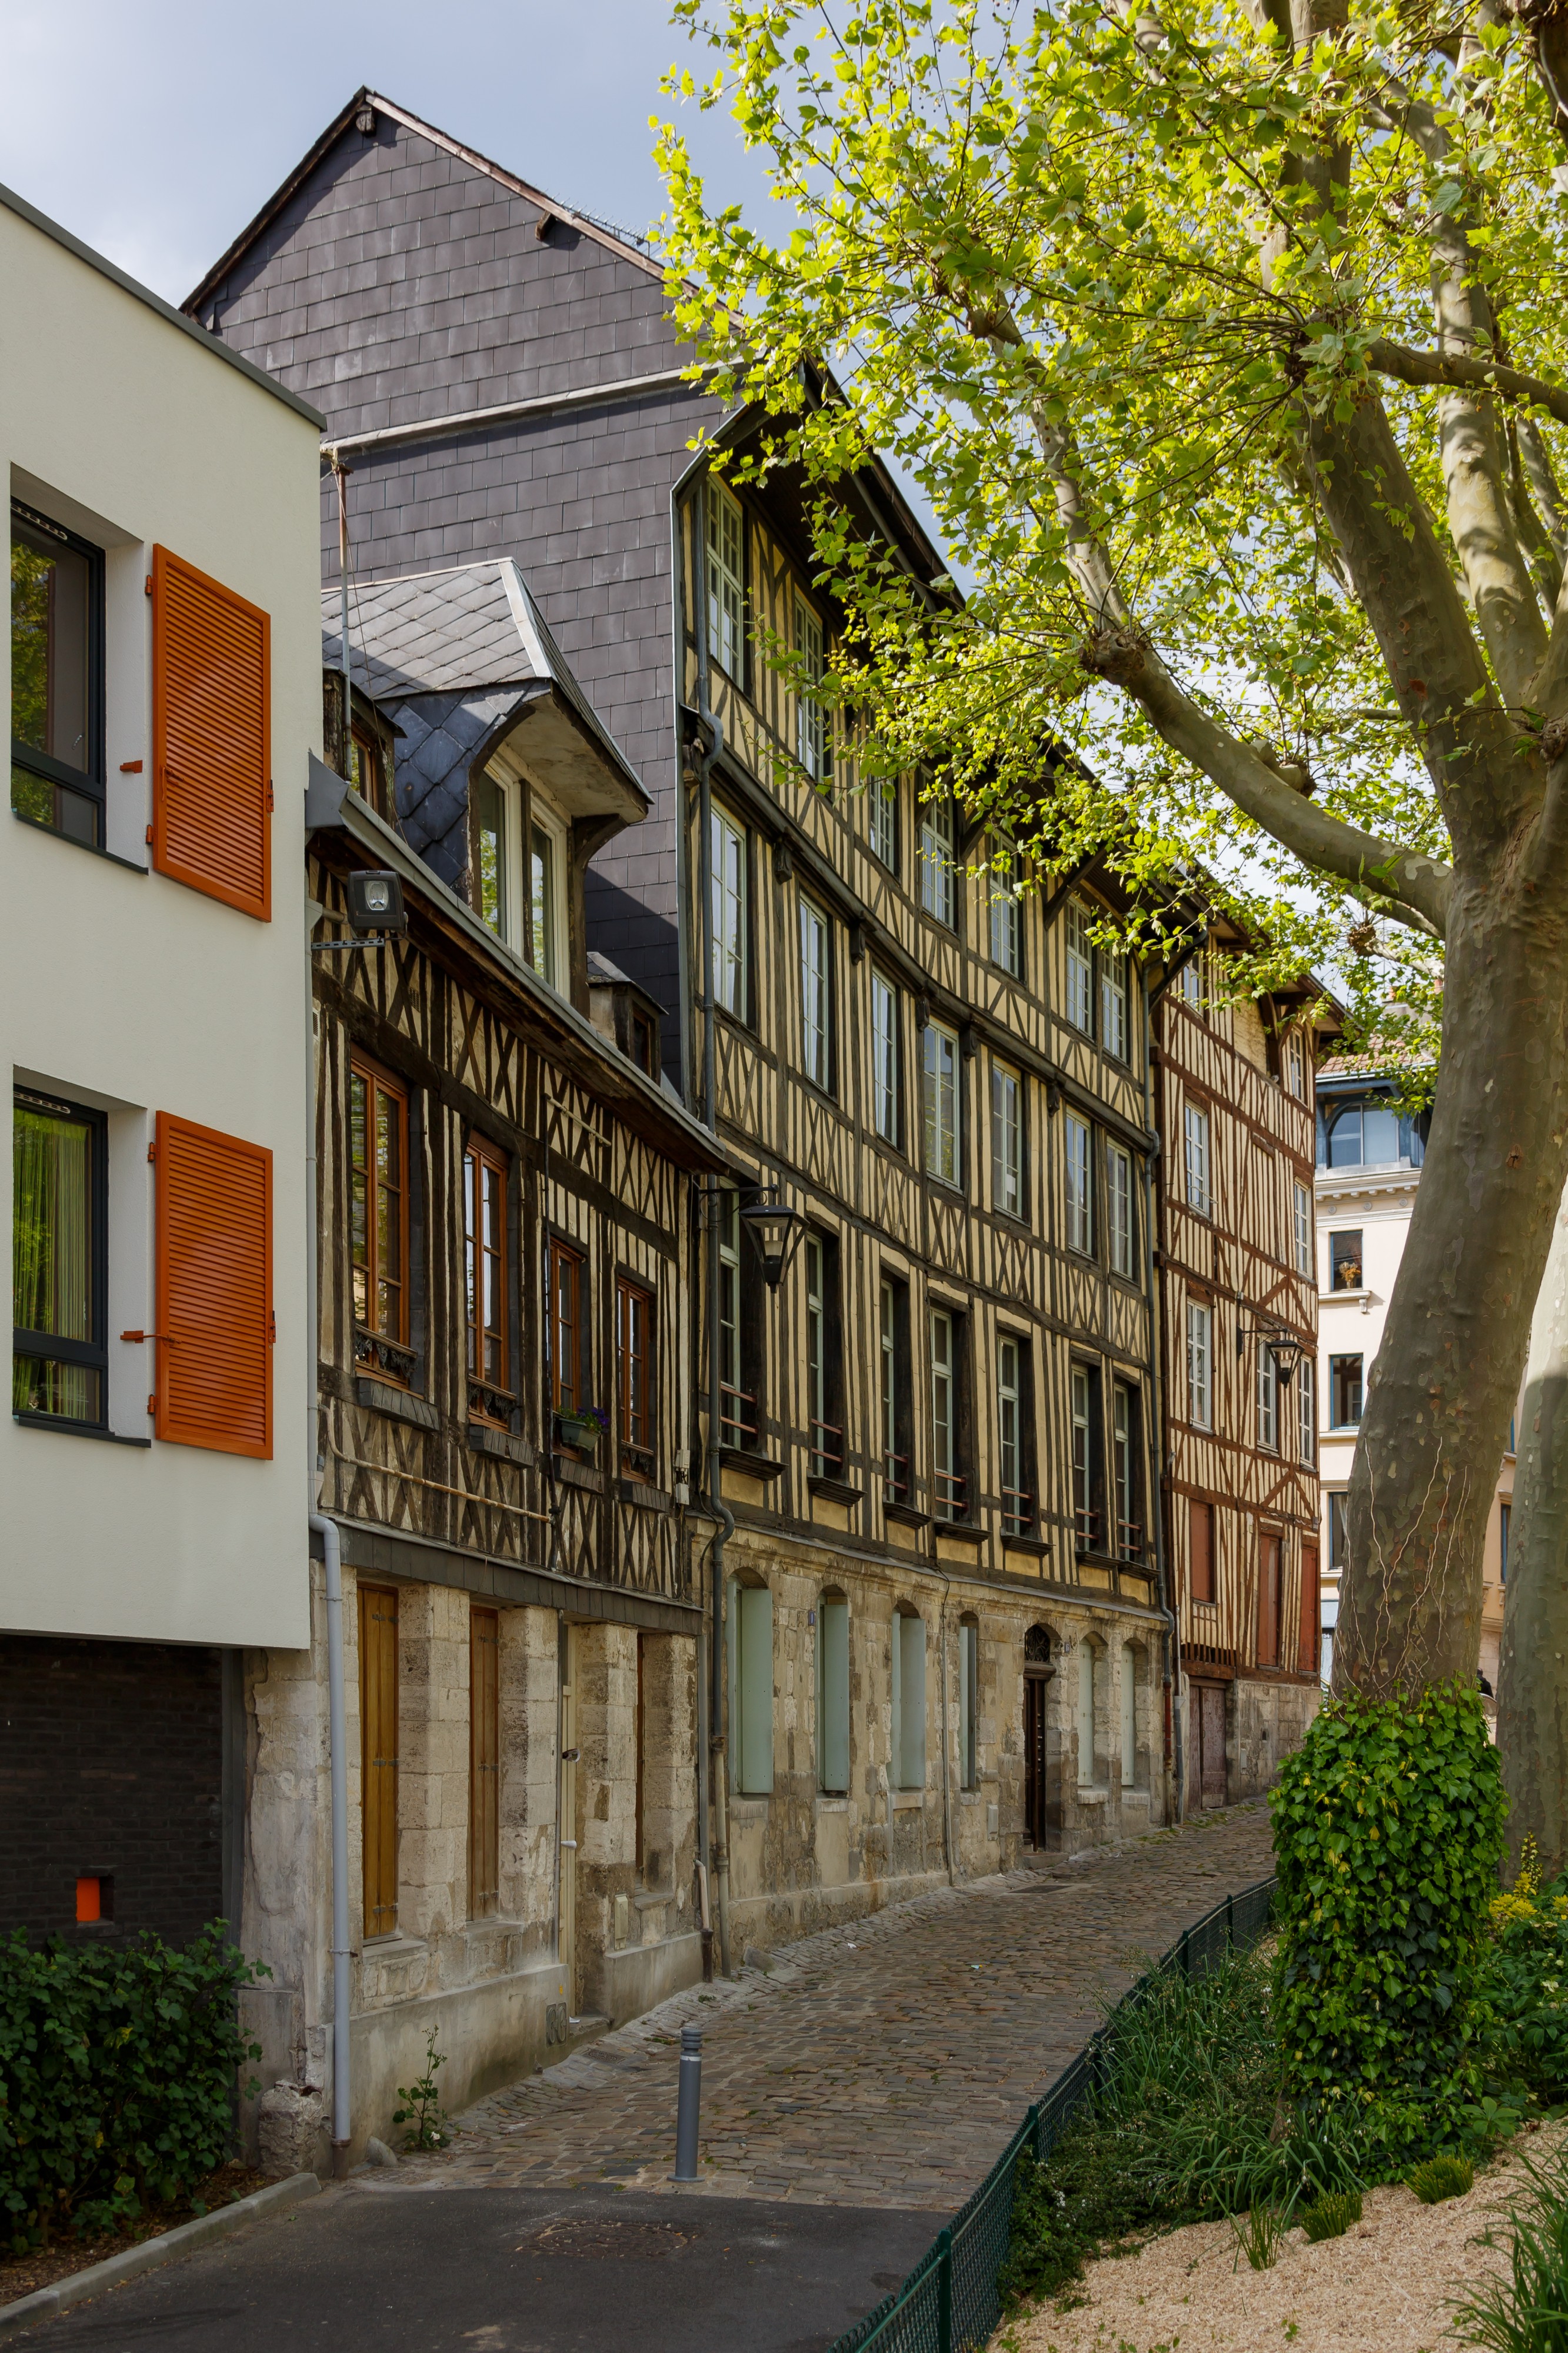 Rouen France Timber-framed-houses-03